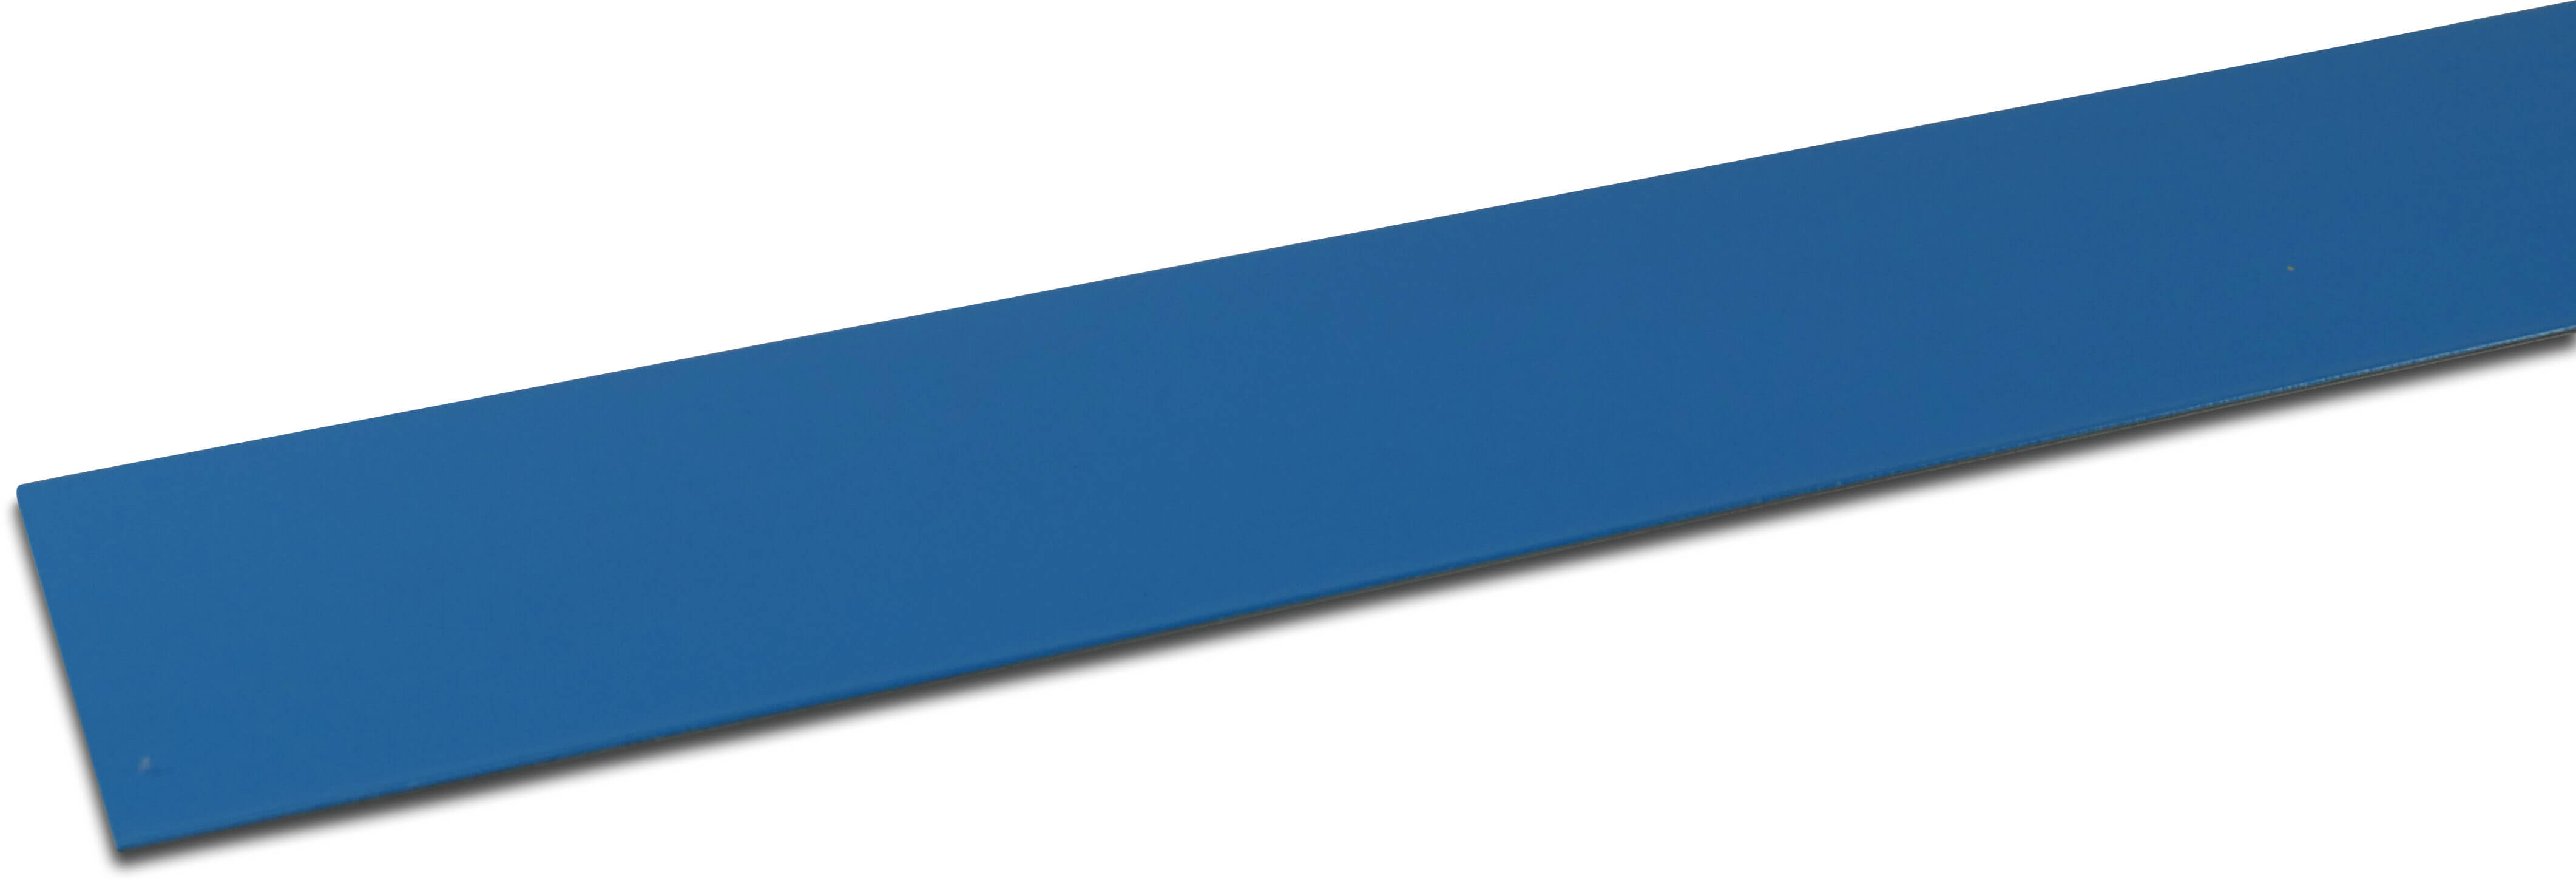 Elbe Profil PVC belagt metal 50 mm x 50 mm x 2000 mm blå 2m type Indvendig vinkel